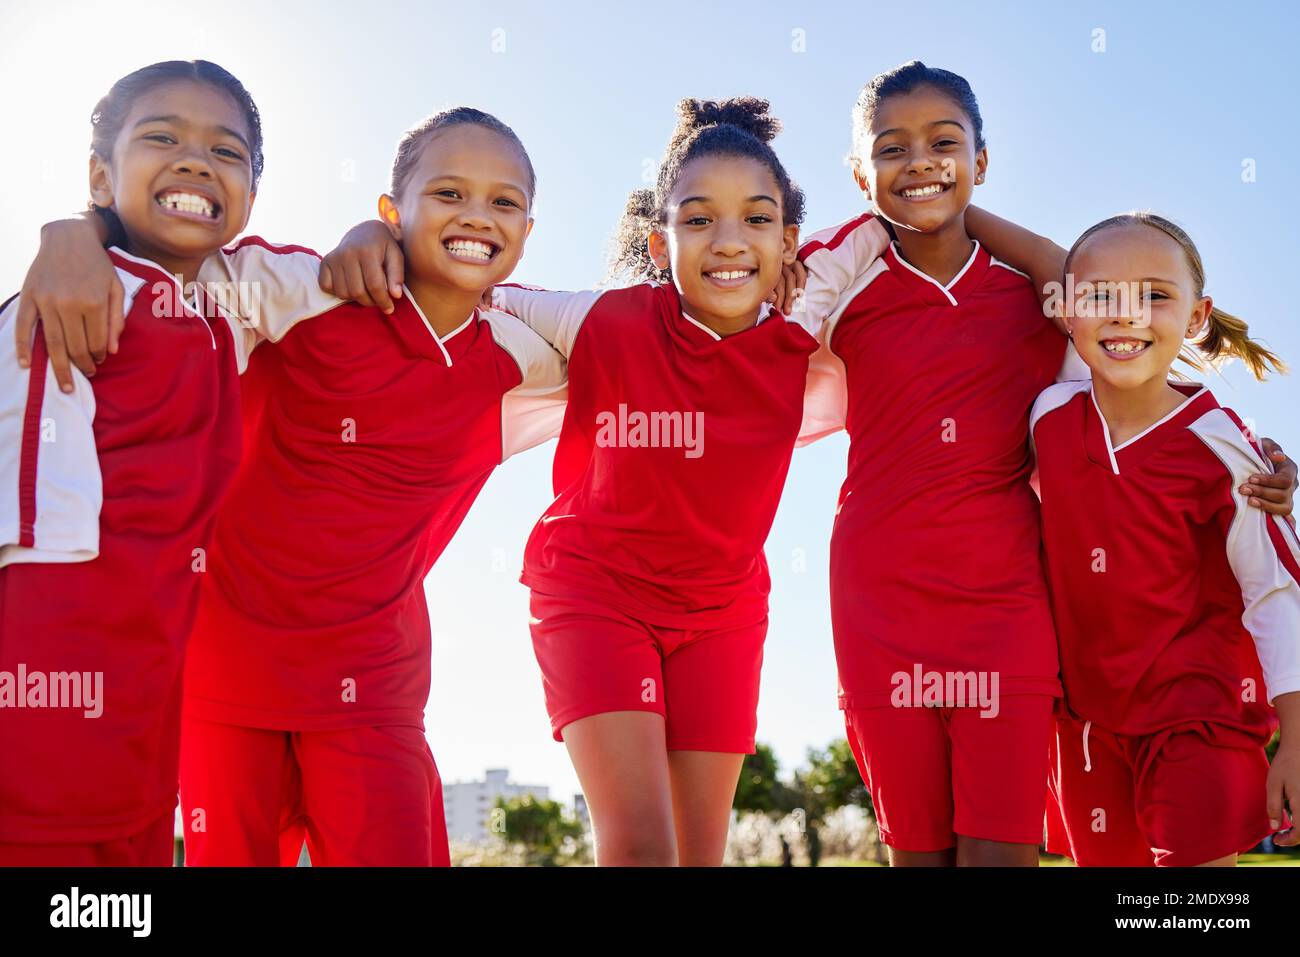 Football Girl, Gruppenporträt und Feld für Lächeln, Teambildung Glück und Solidarität beim Sporttraining. Weibliche Kinder, sportliche Vielfalt und Freunde Stockfoto